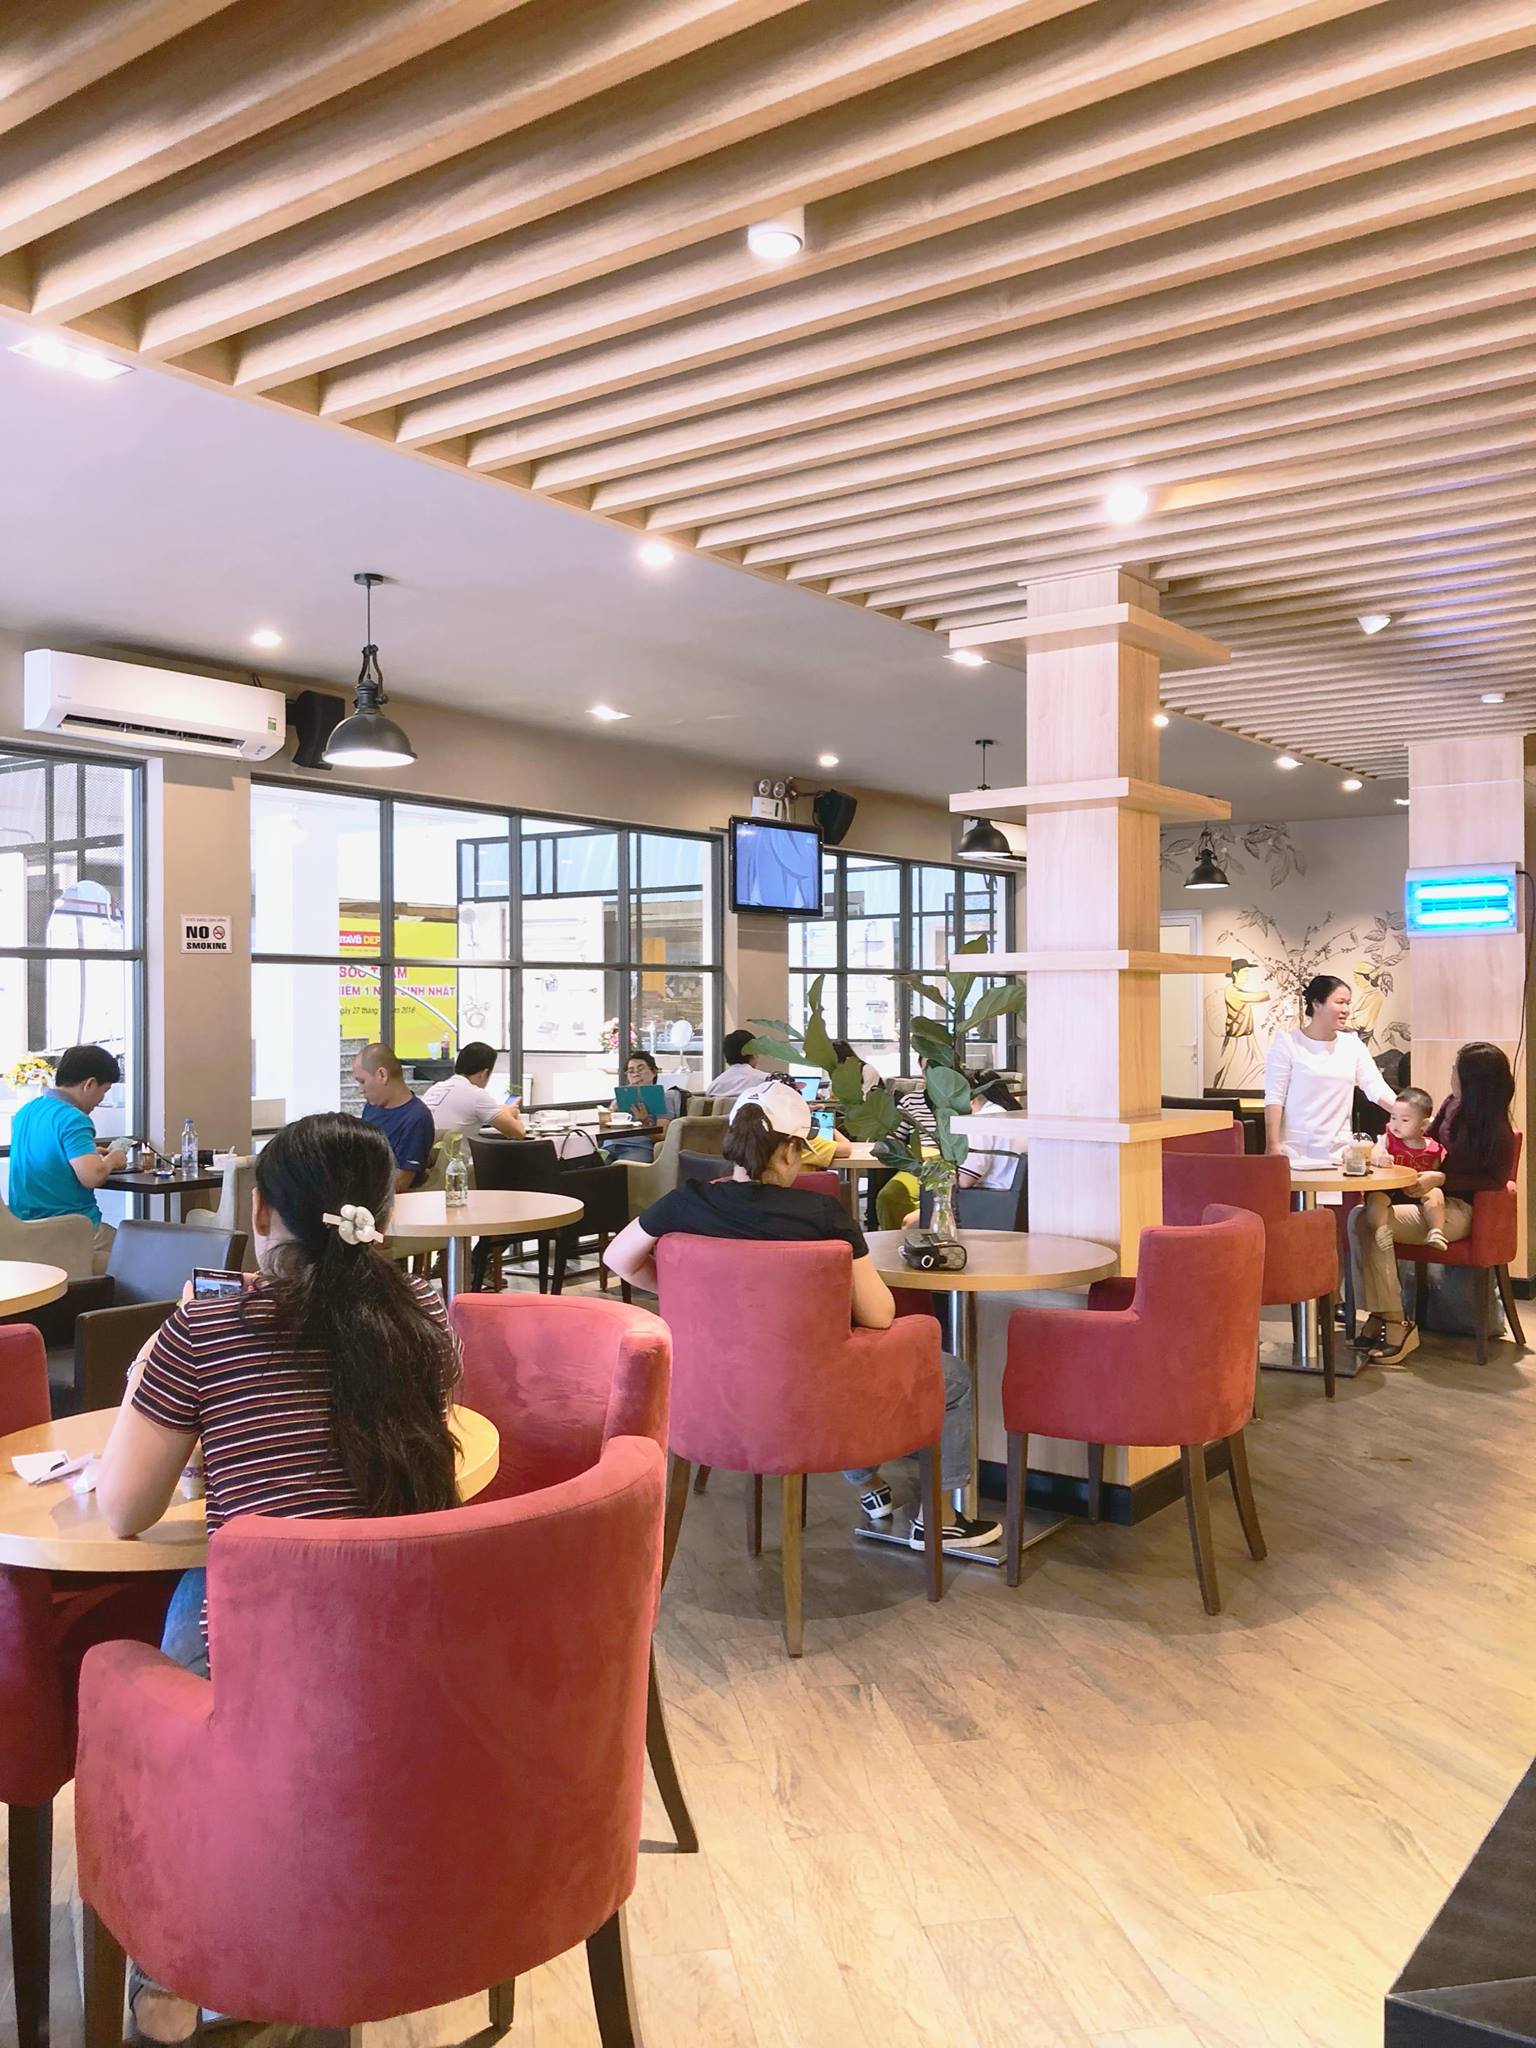 Top 10 quán cafe học nhóm yên tĩnh ở quận 5 được giới trẻ tìm đến học nhóm - Kaizen Coffee